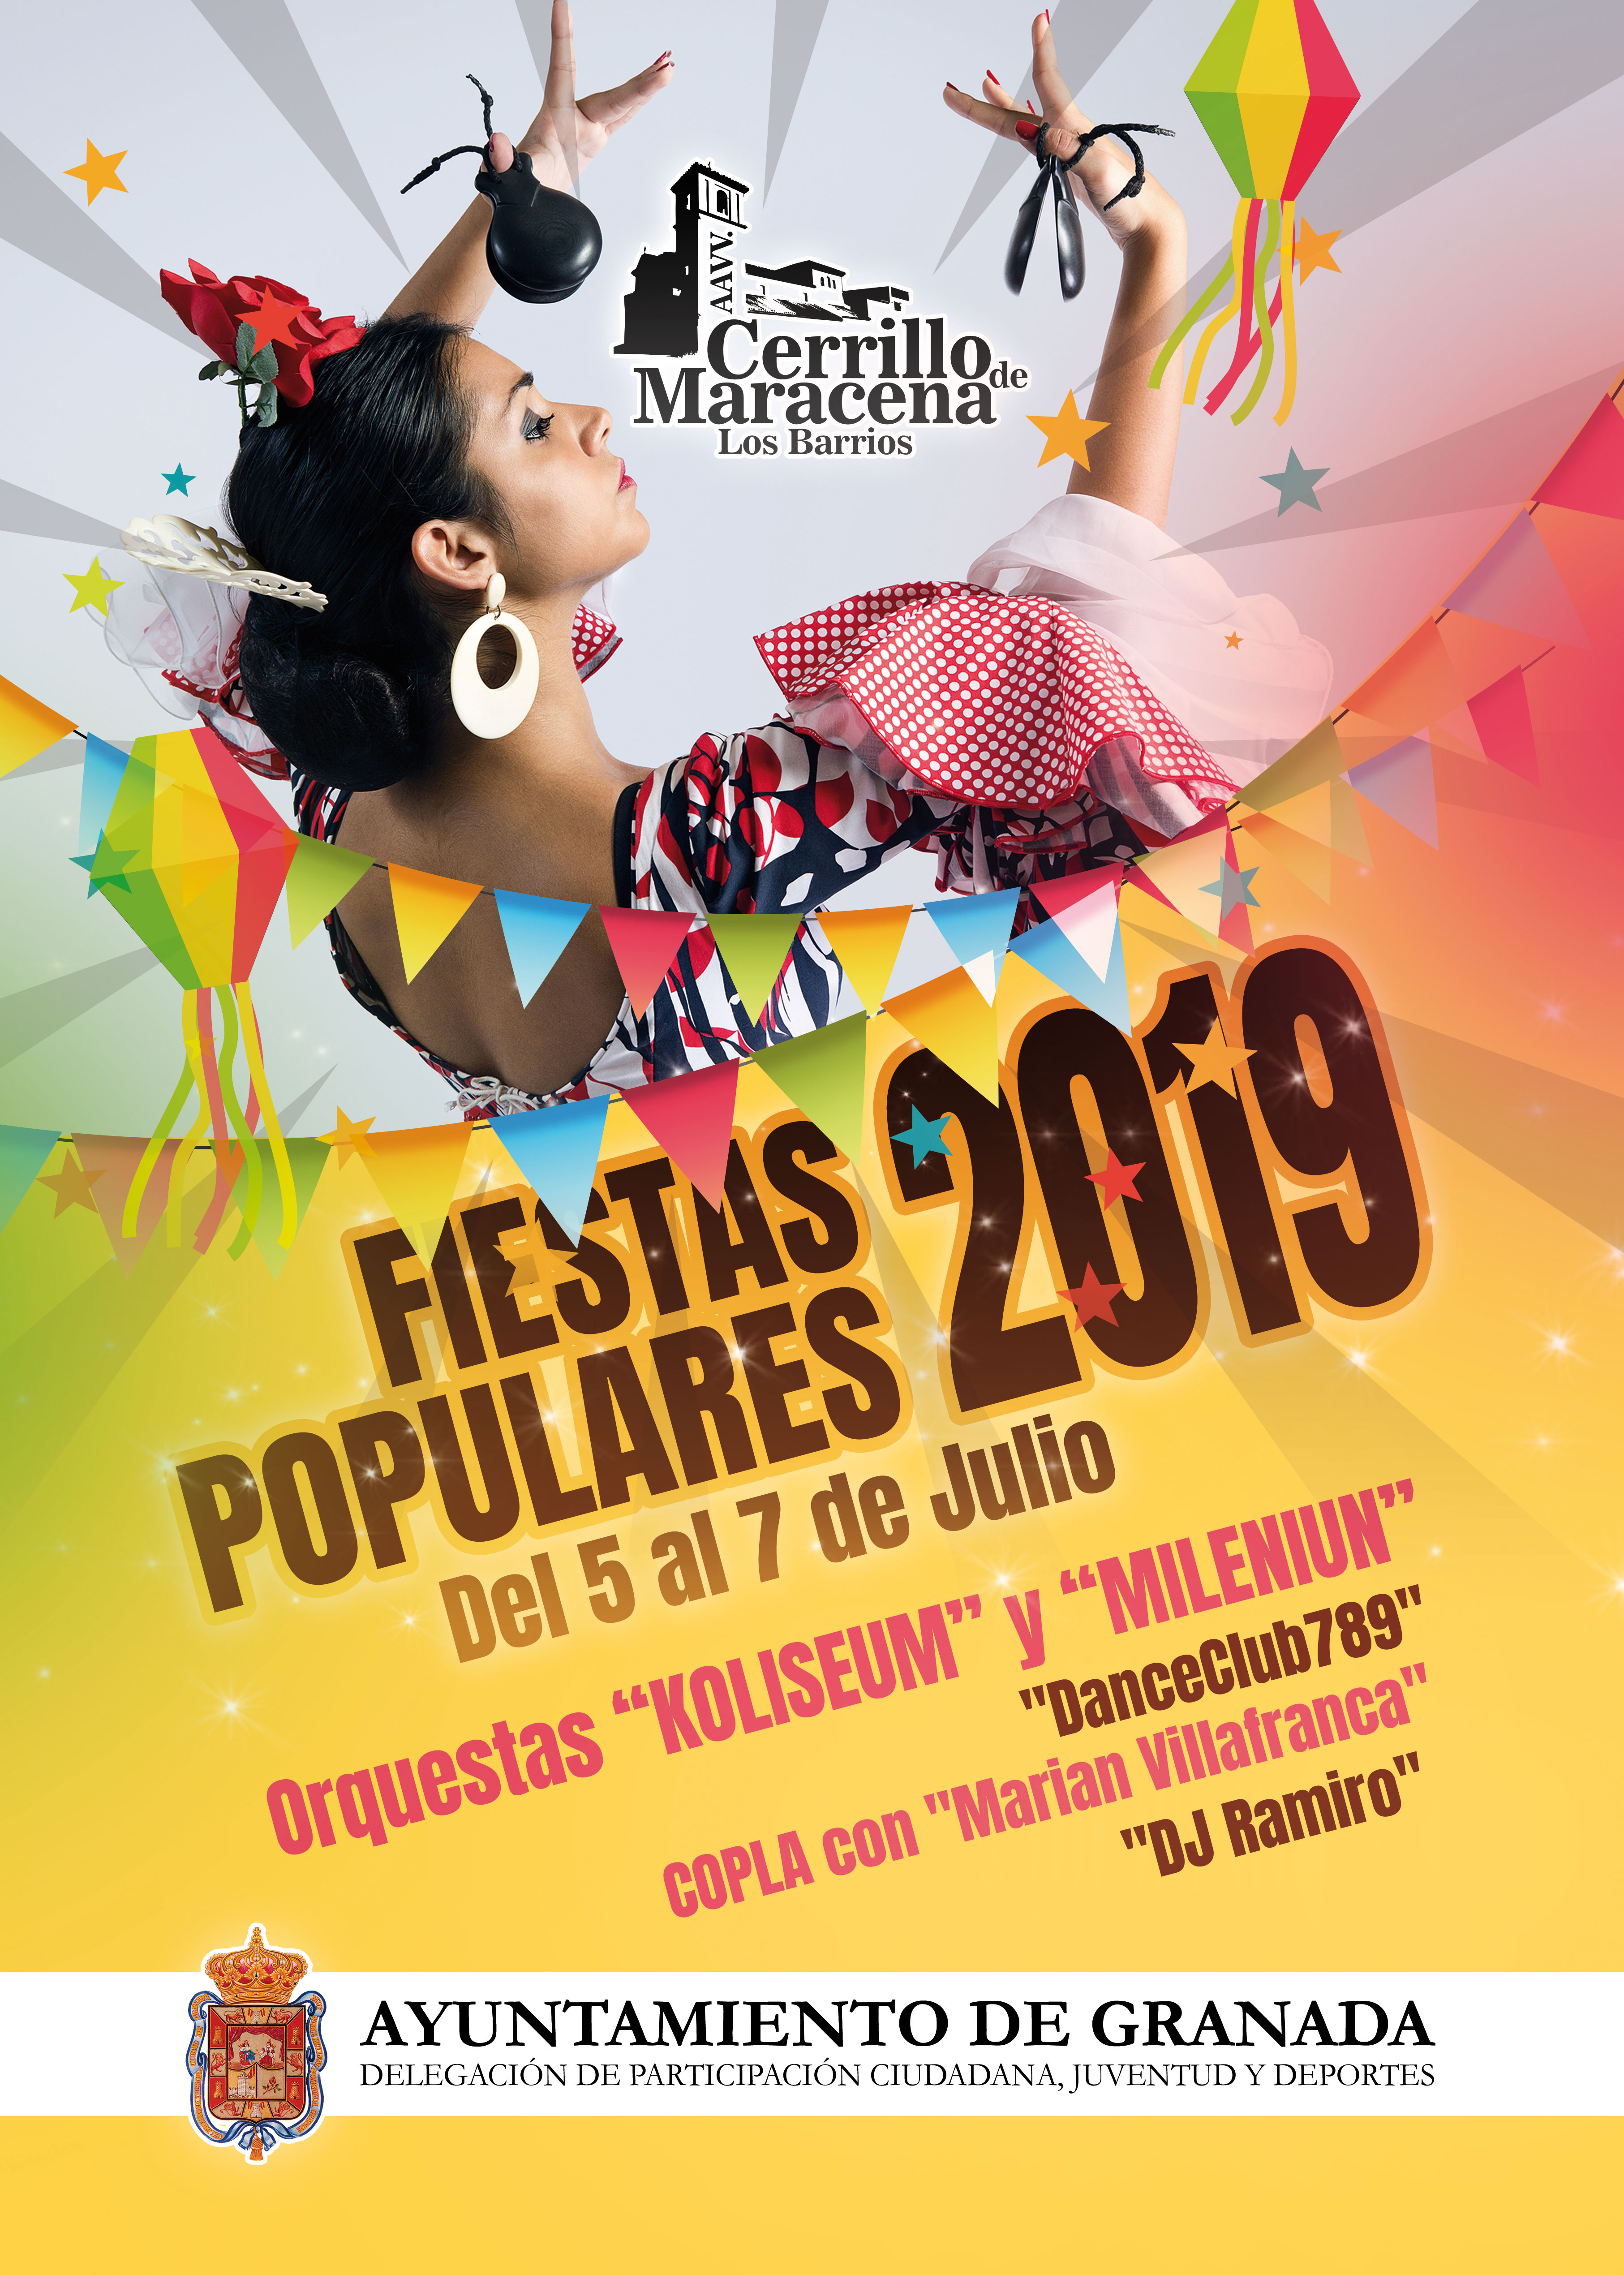 ©Ayto.Granada: Fiestas Cerrillo de Maracena 2019